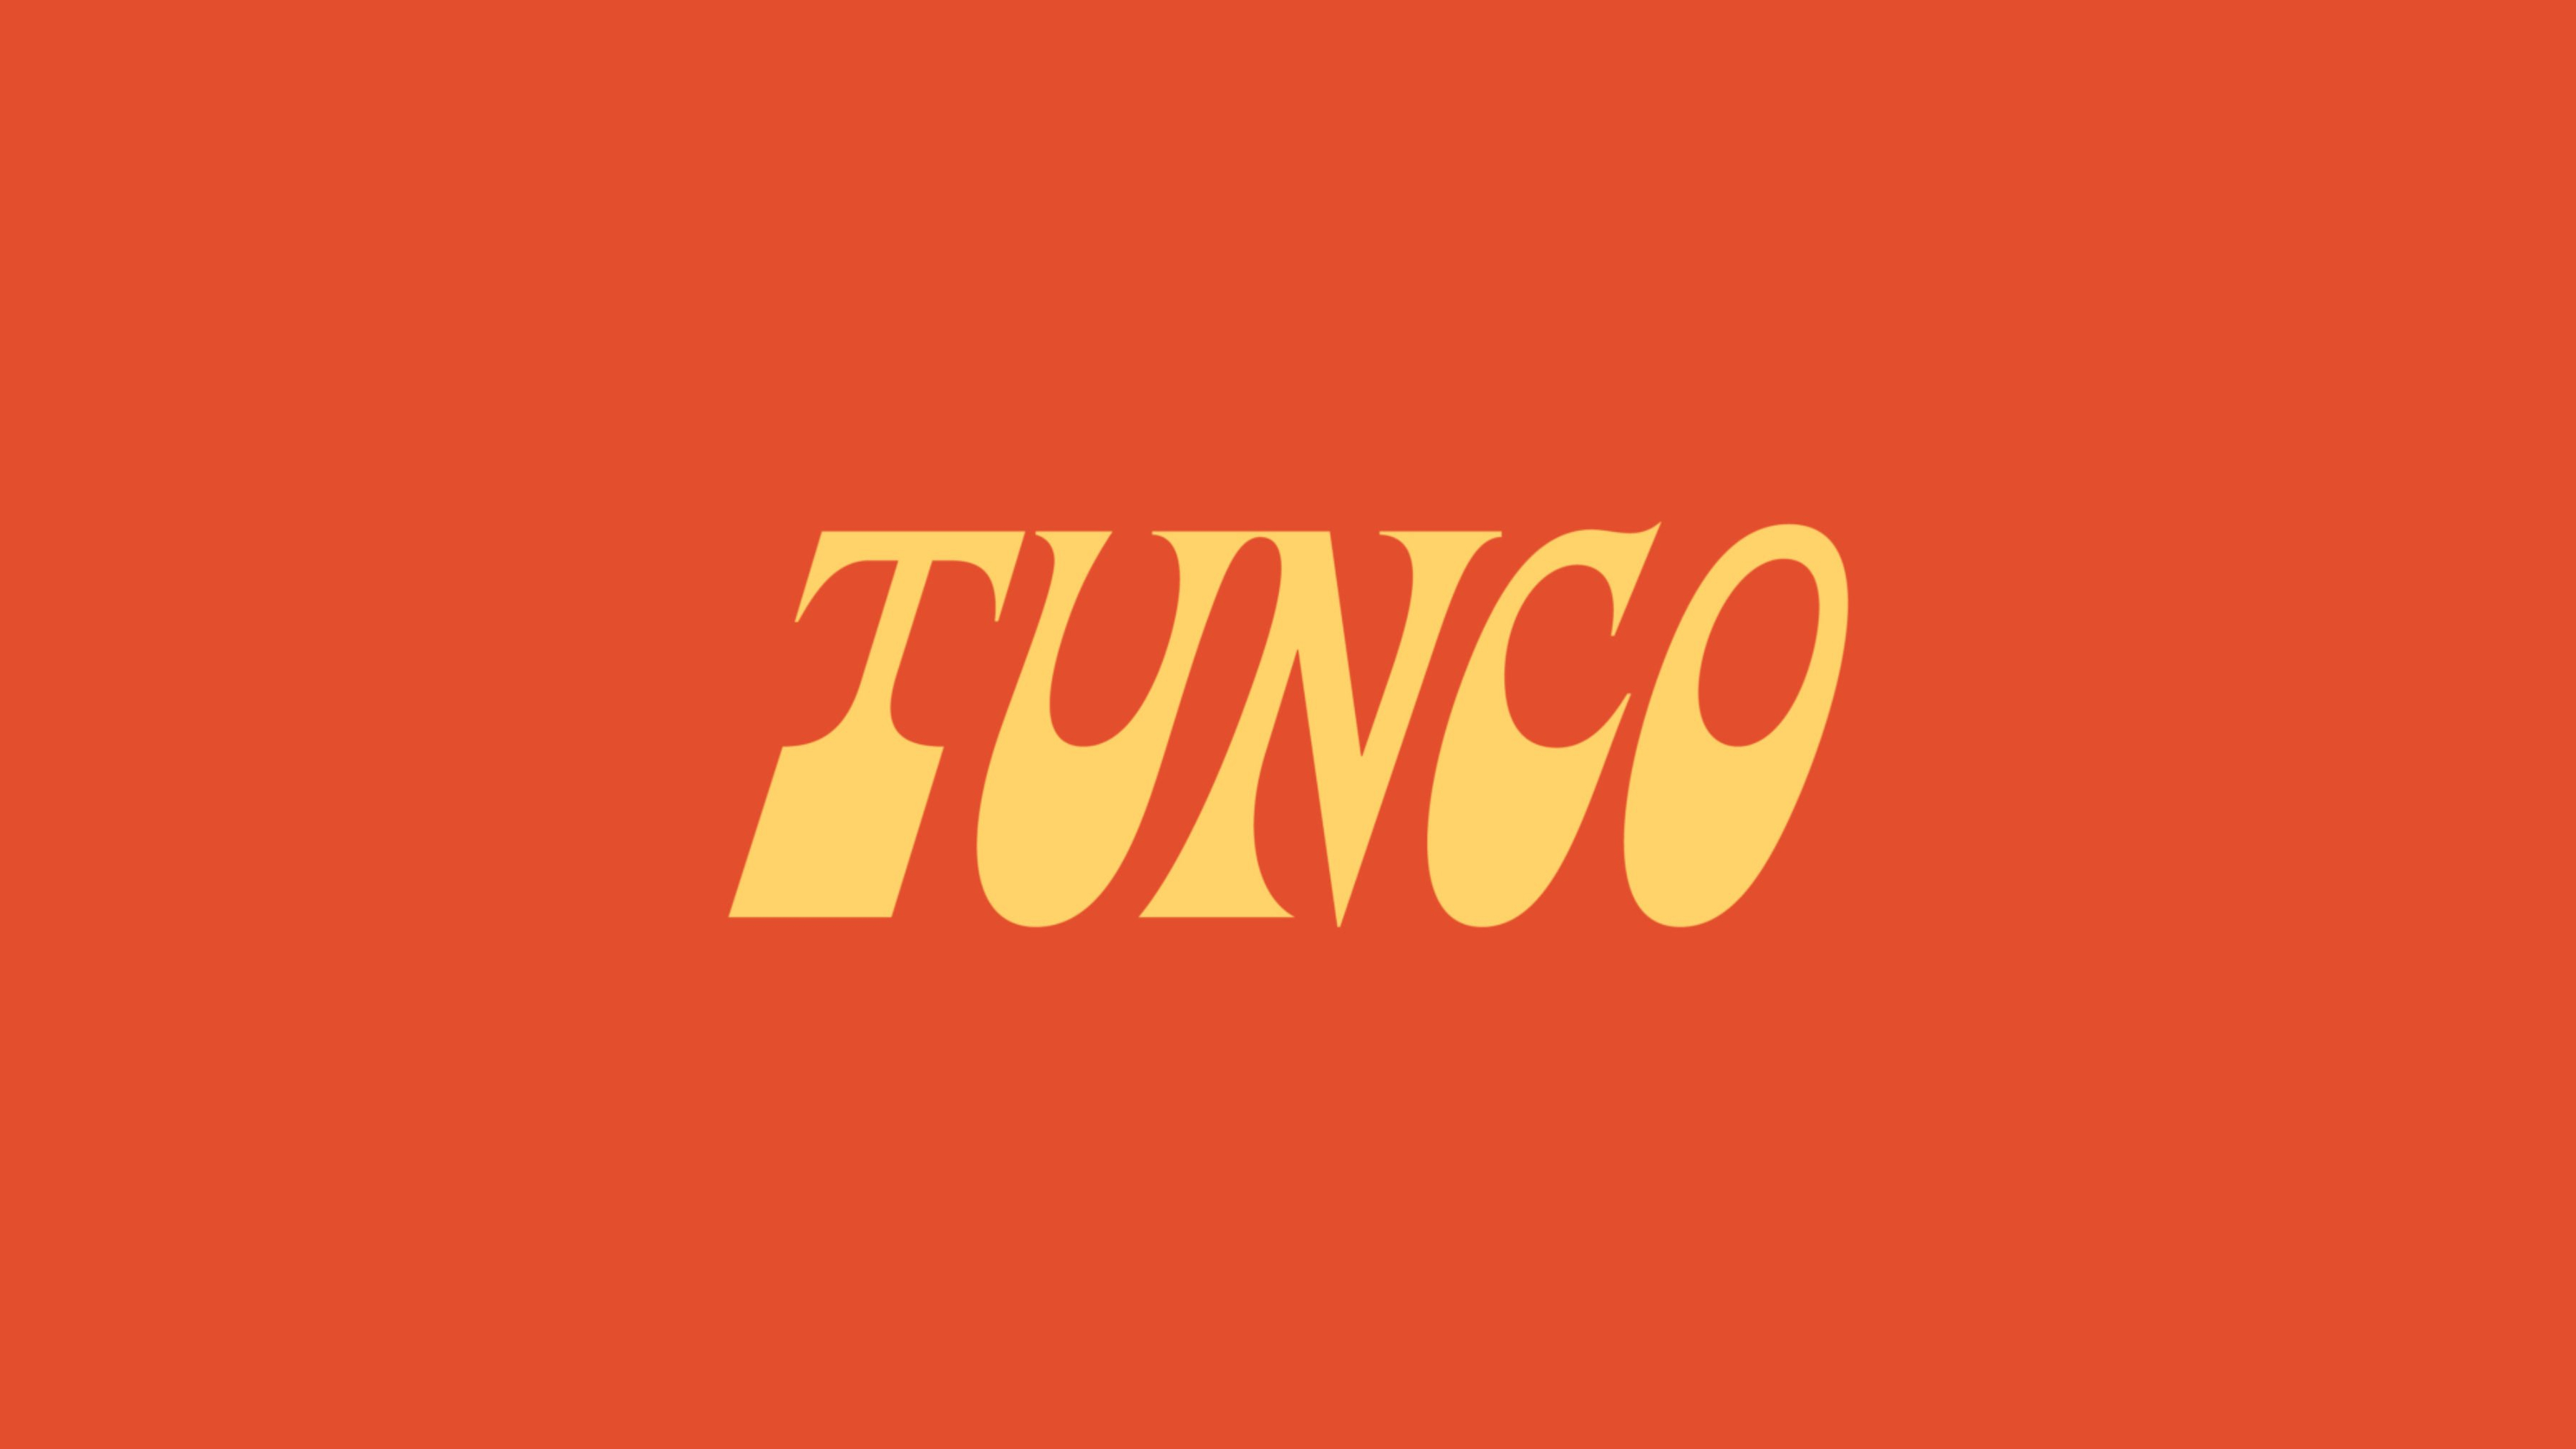 Siden 2015 har Tunco servert asiatisk-inspirerte nudelretter til kresne Oslofolk. Vi utviklet designkonseptet Smaksreisen – Trippy Cuisine.